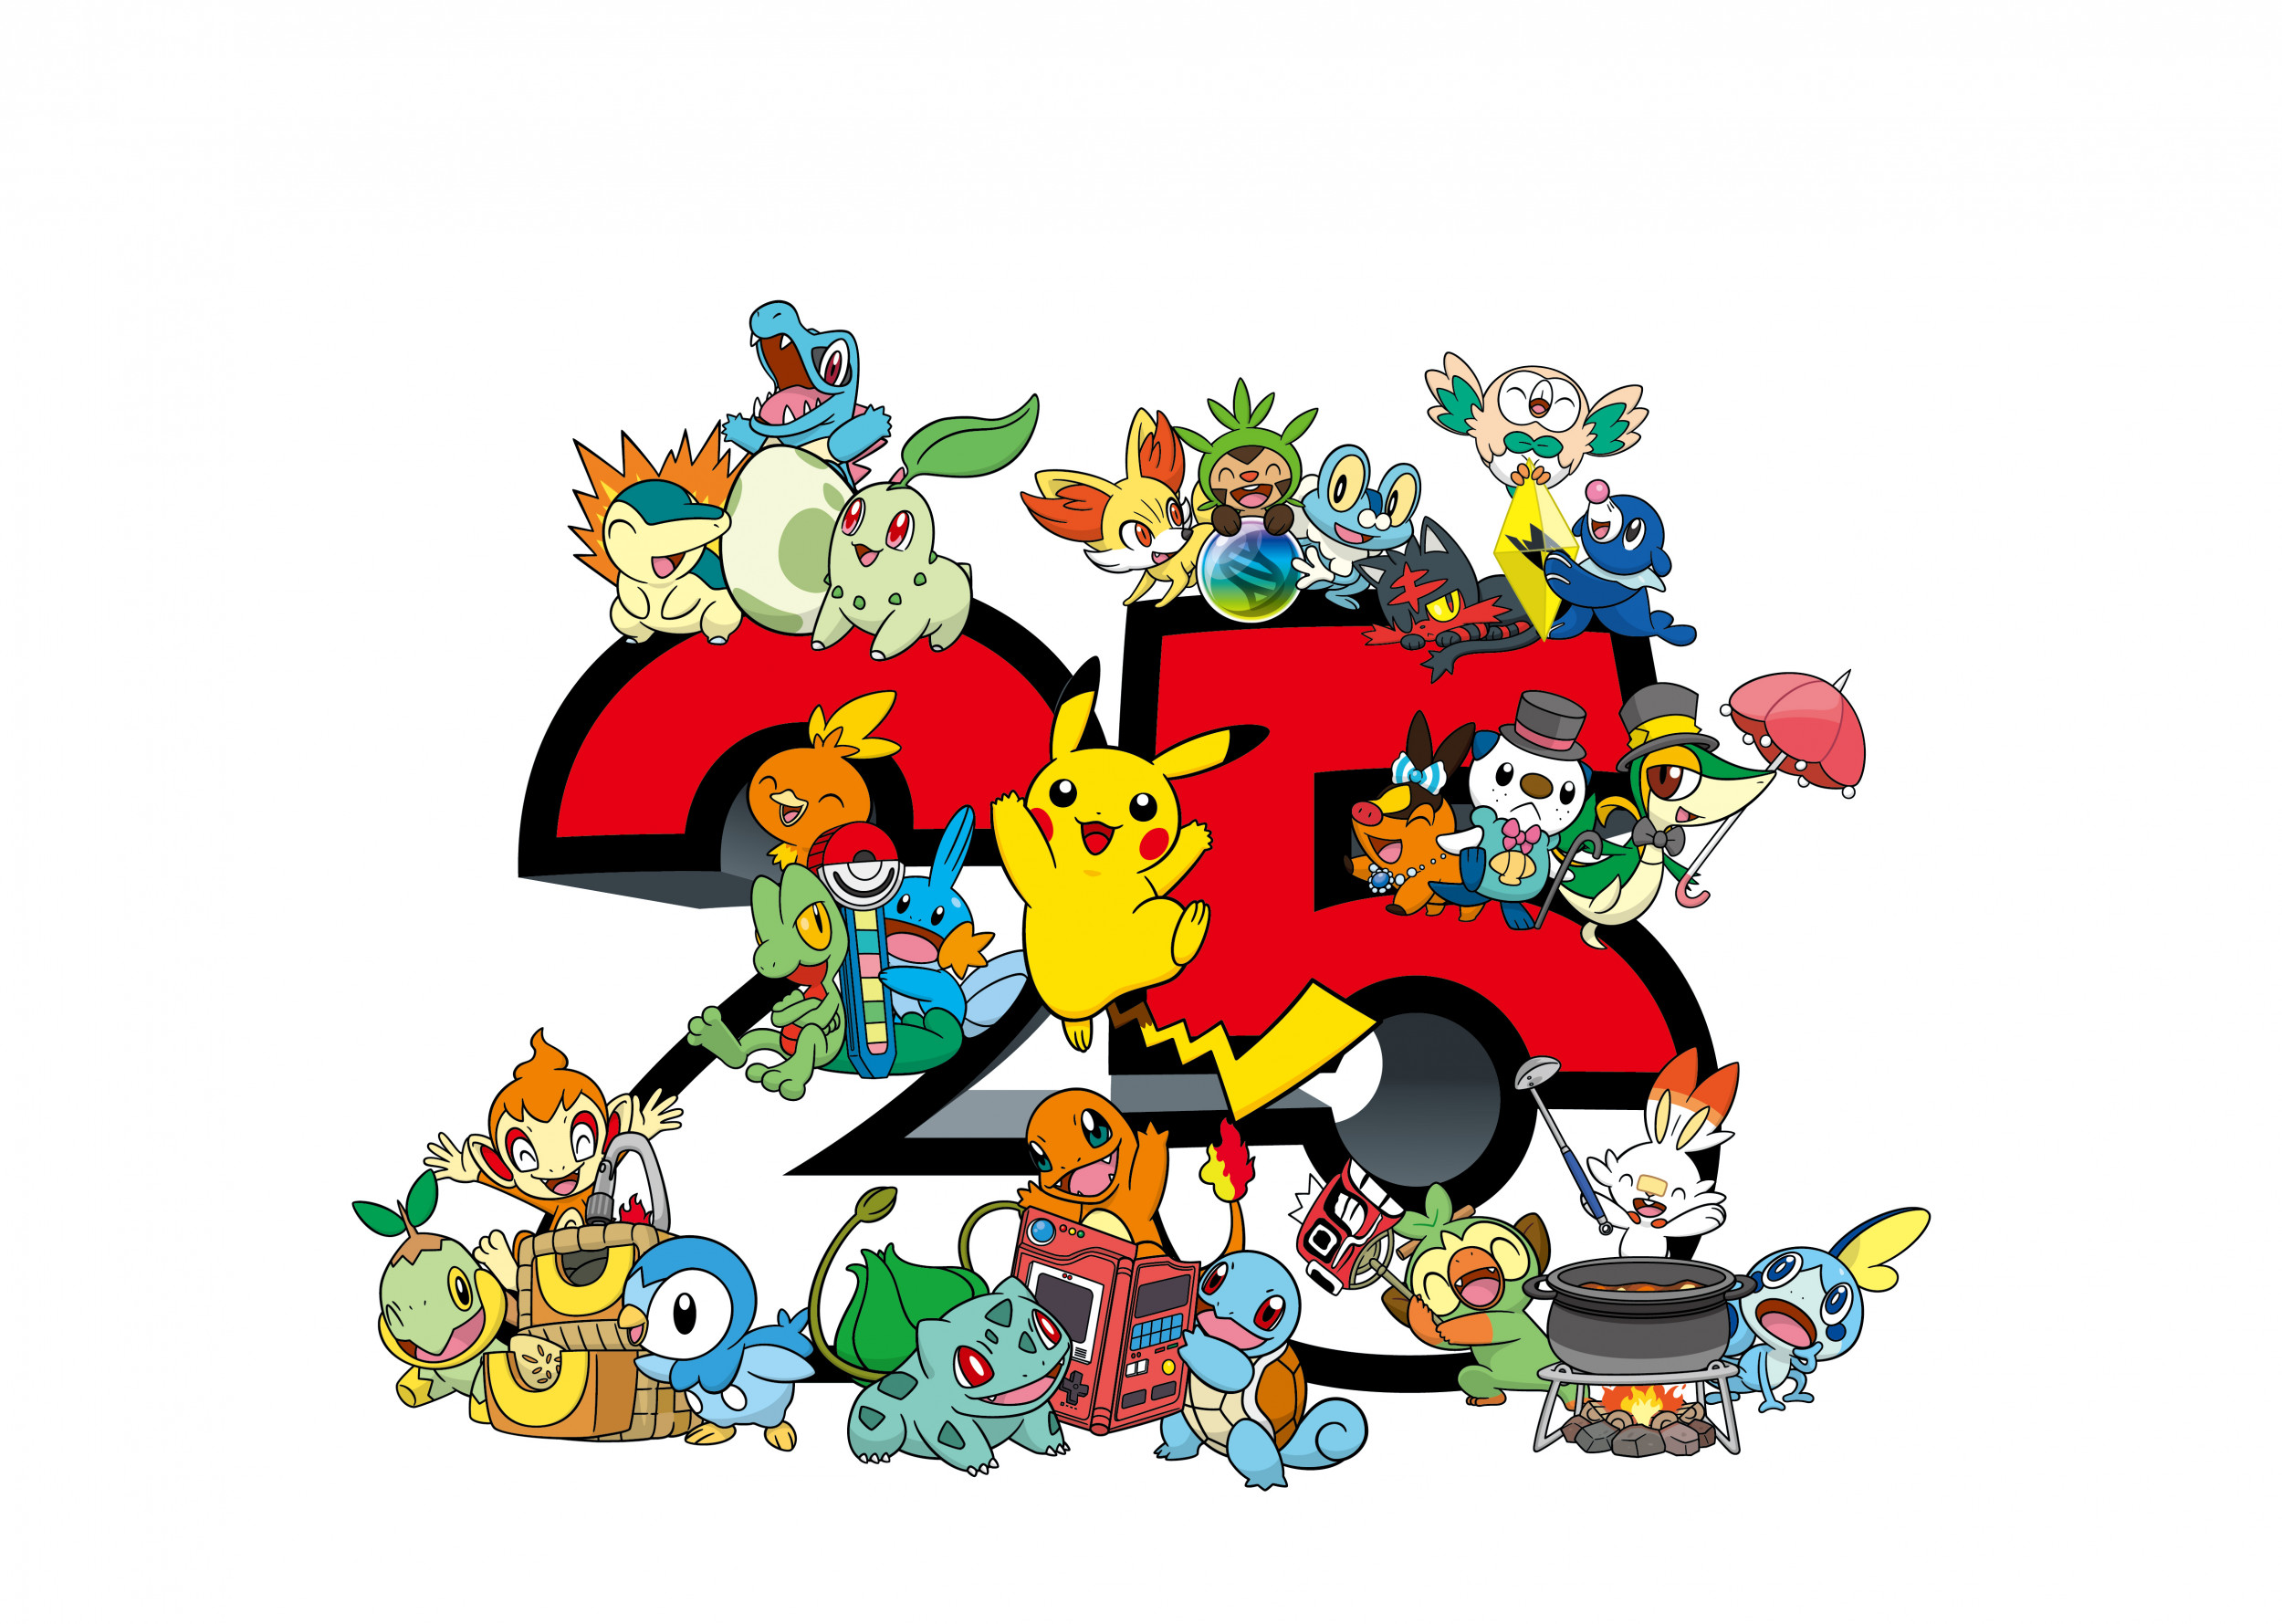 Um papel de parede de um grupo de personagens do jogo pokemon